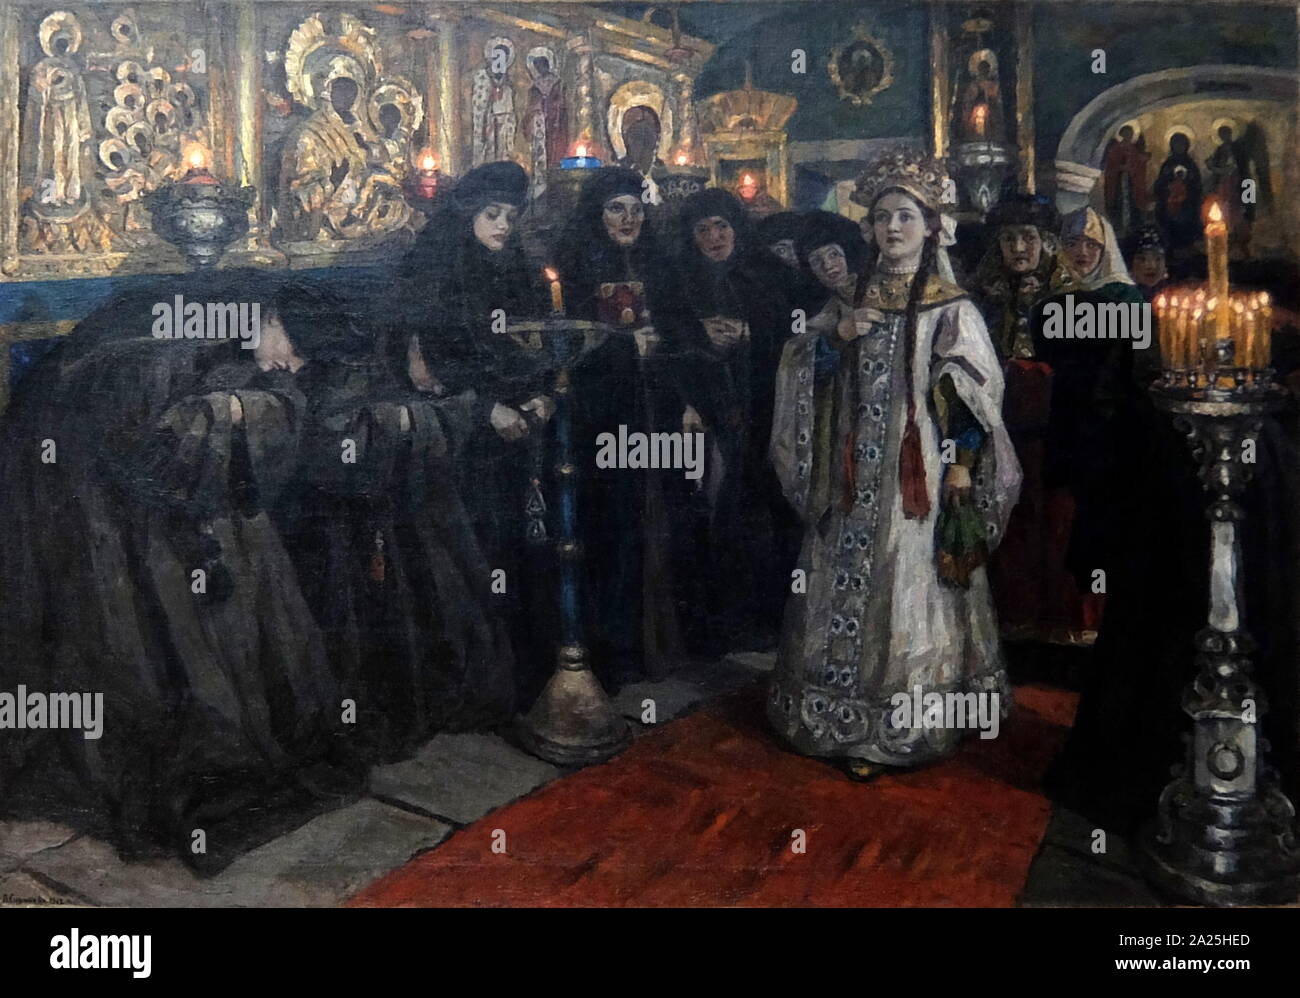 Gemälde mit dem Titel "Die zarin Besuch in ein Nonnenkloster" von Wassili Surikow. Wassili Iwanowitsch Surikow (1848-1916) ein russischer Realist Historienmaler. Stockfoto